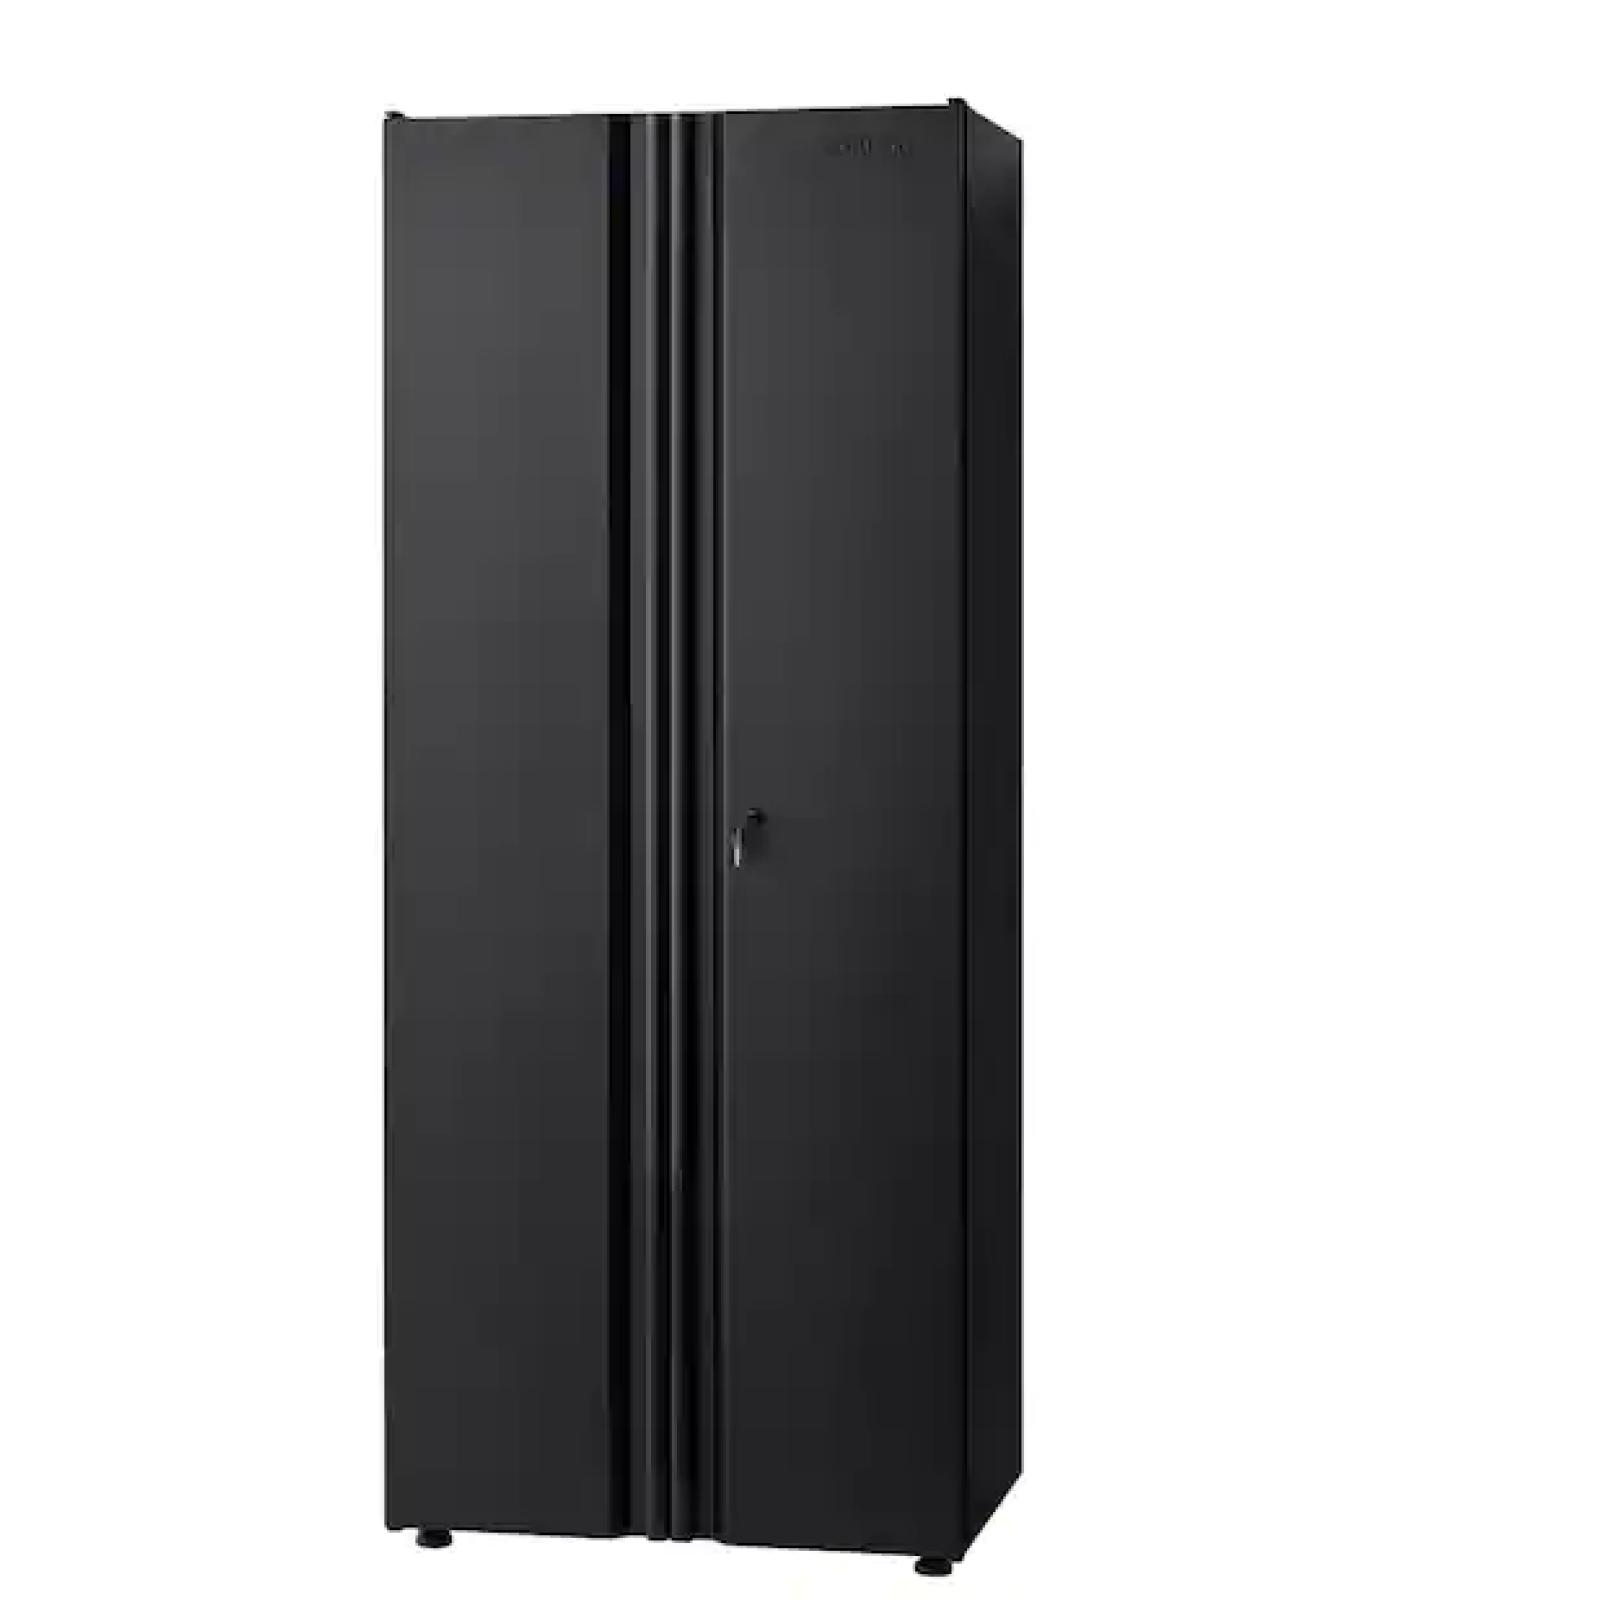 DALLAS LOCATION -Husky Regular Duty Welded 24-Gauge Steel Freestanding Garage Cabinet in Black (30.5 in. W x 75 in. H x 19.6 in. D)